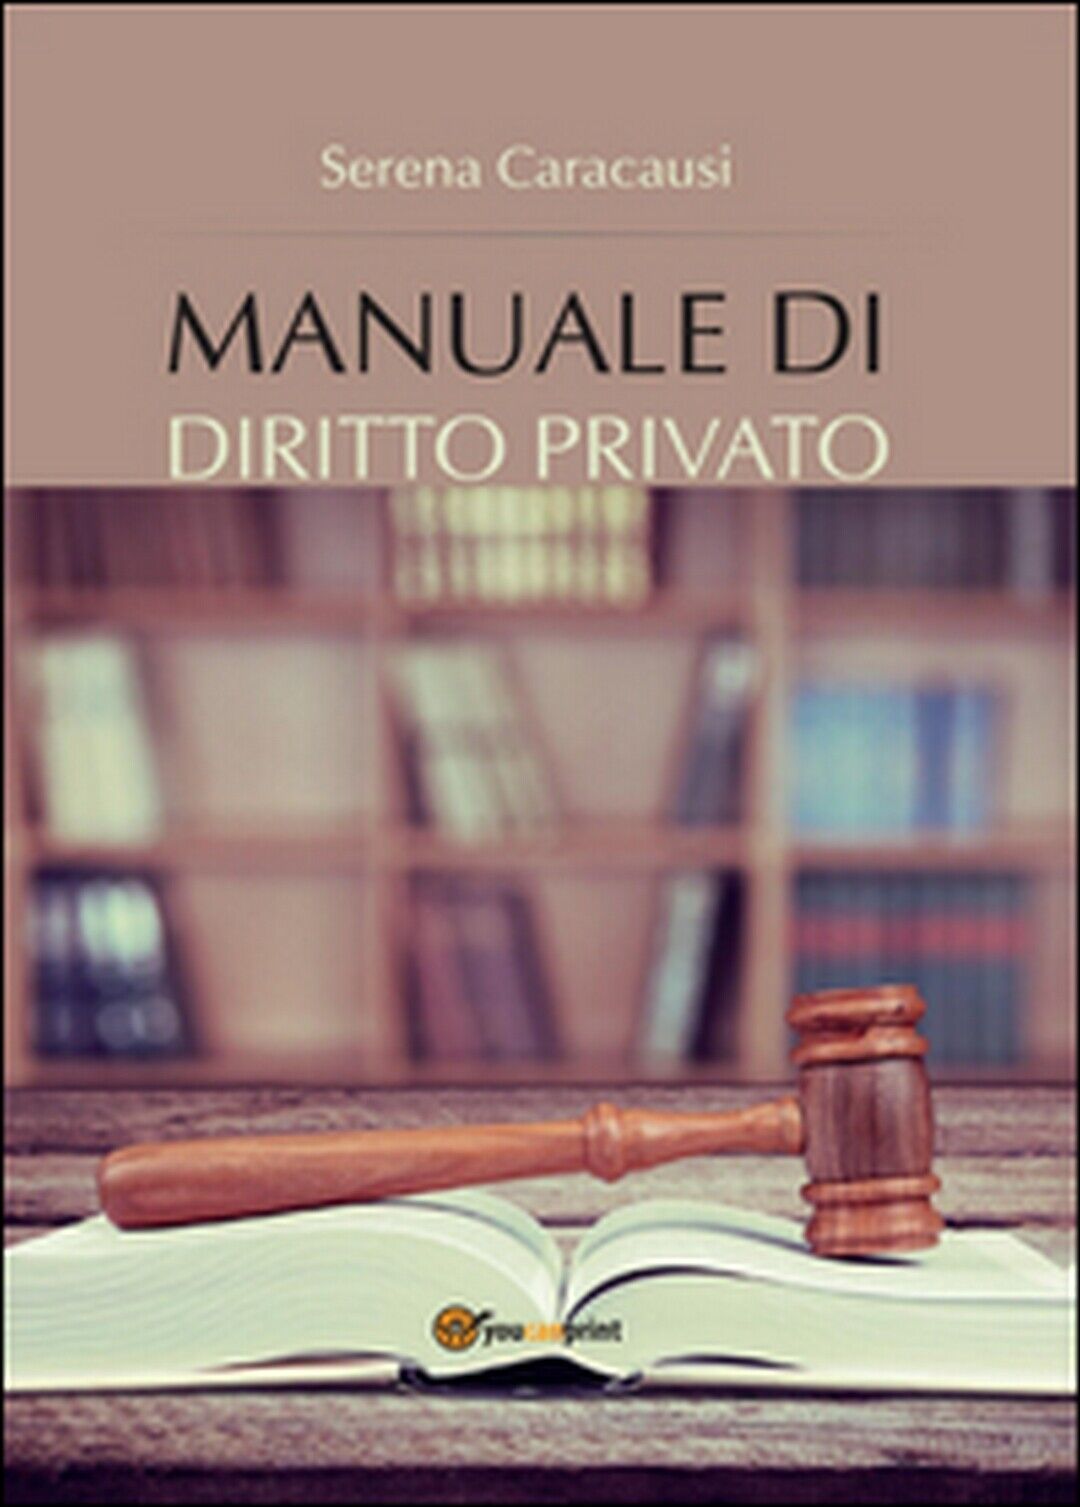 Manuale di diritto privato  - Serena Caracausi,  2016,  Youcanprint